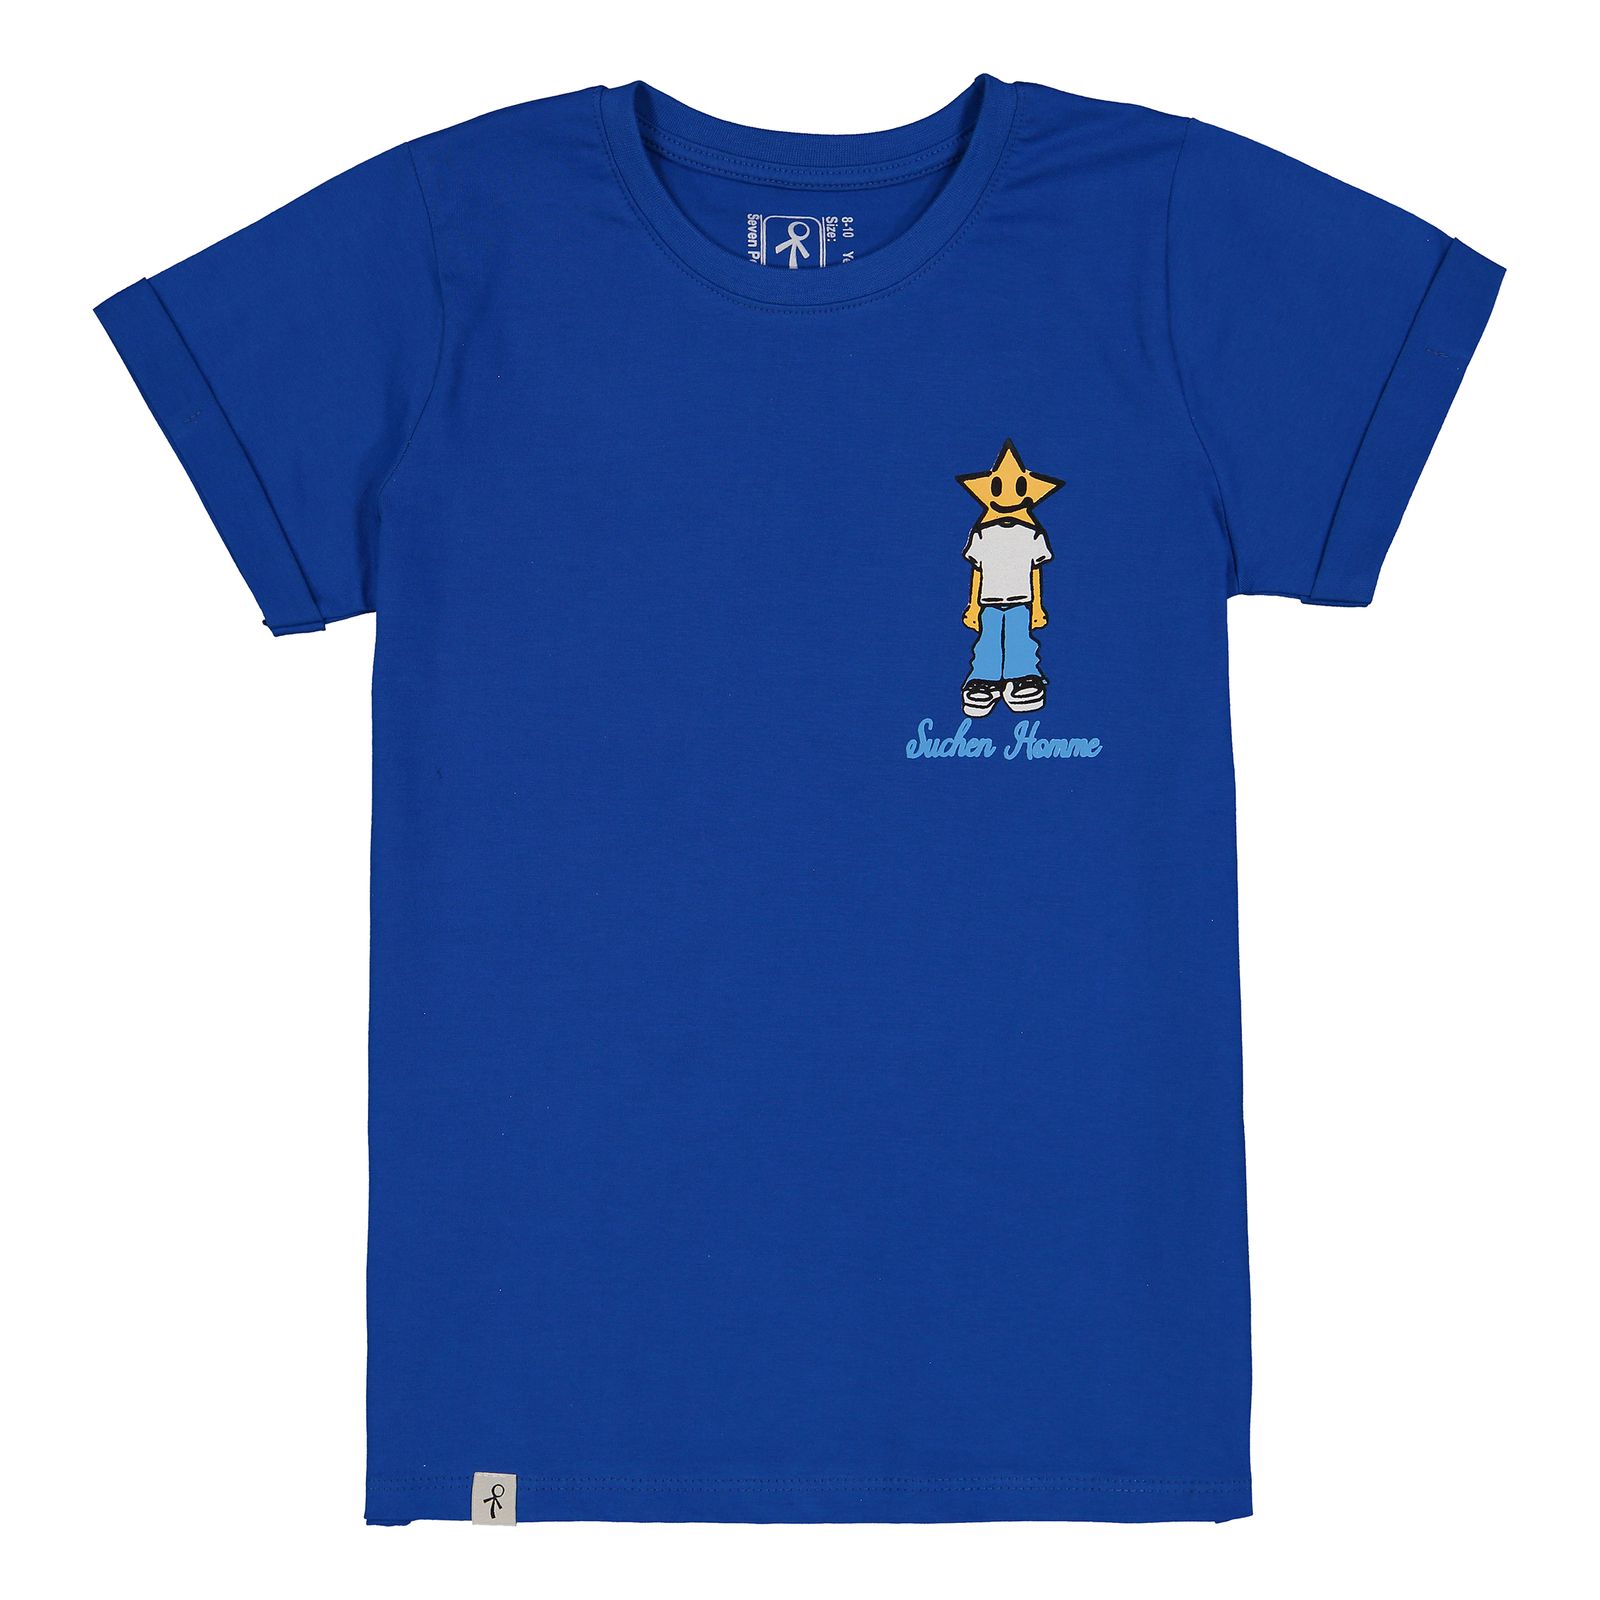 تی شرت آستین کوتاه پسرانه سون پون مدل 1105 رنگ آبی -  - 1